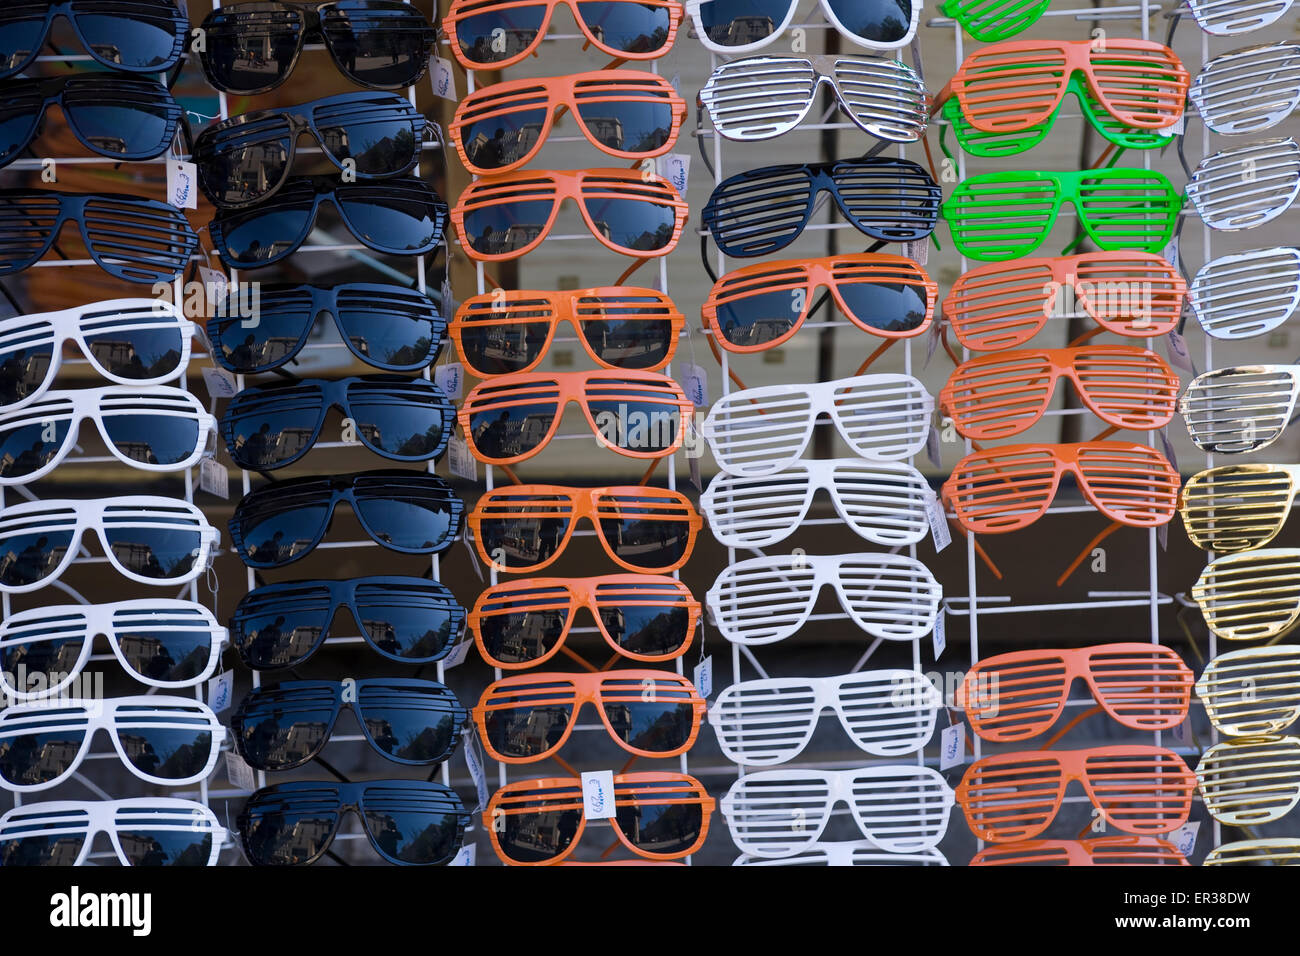 Europe, Germany, North Rhine-Westphalia, Ruhr area, Essen, sale of sunglasses.  Europa, Deutschland, Nordrhein-Westfalen, Ruhrge Stock Photo